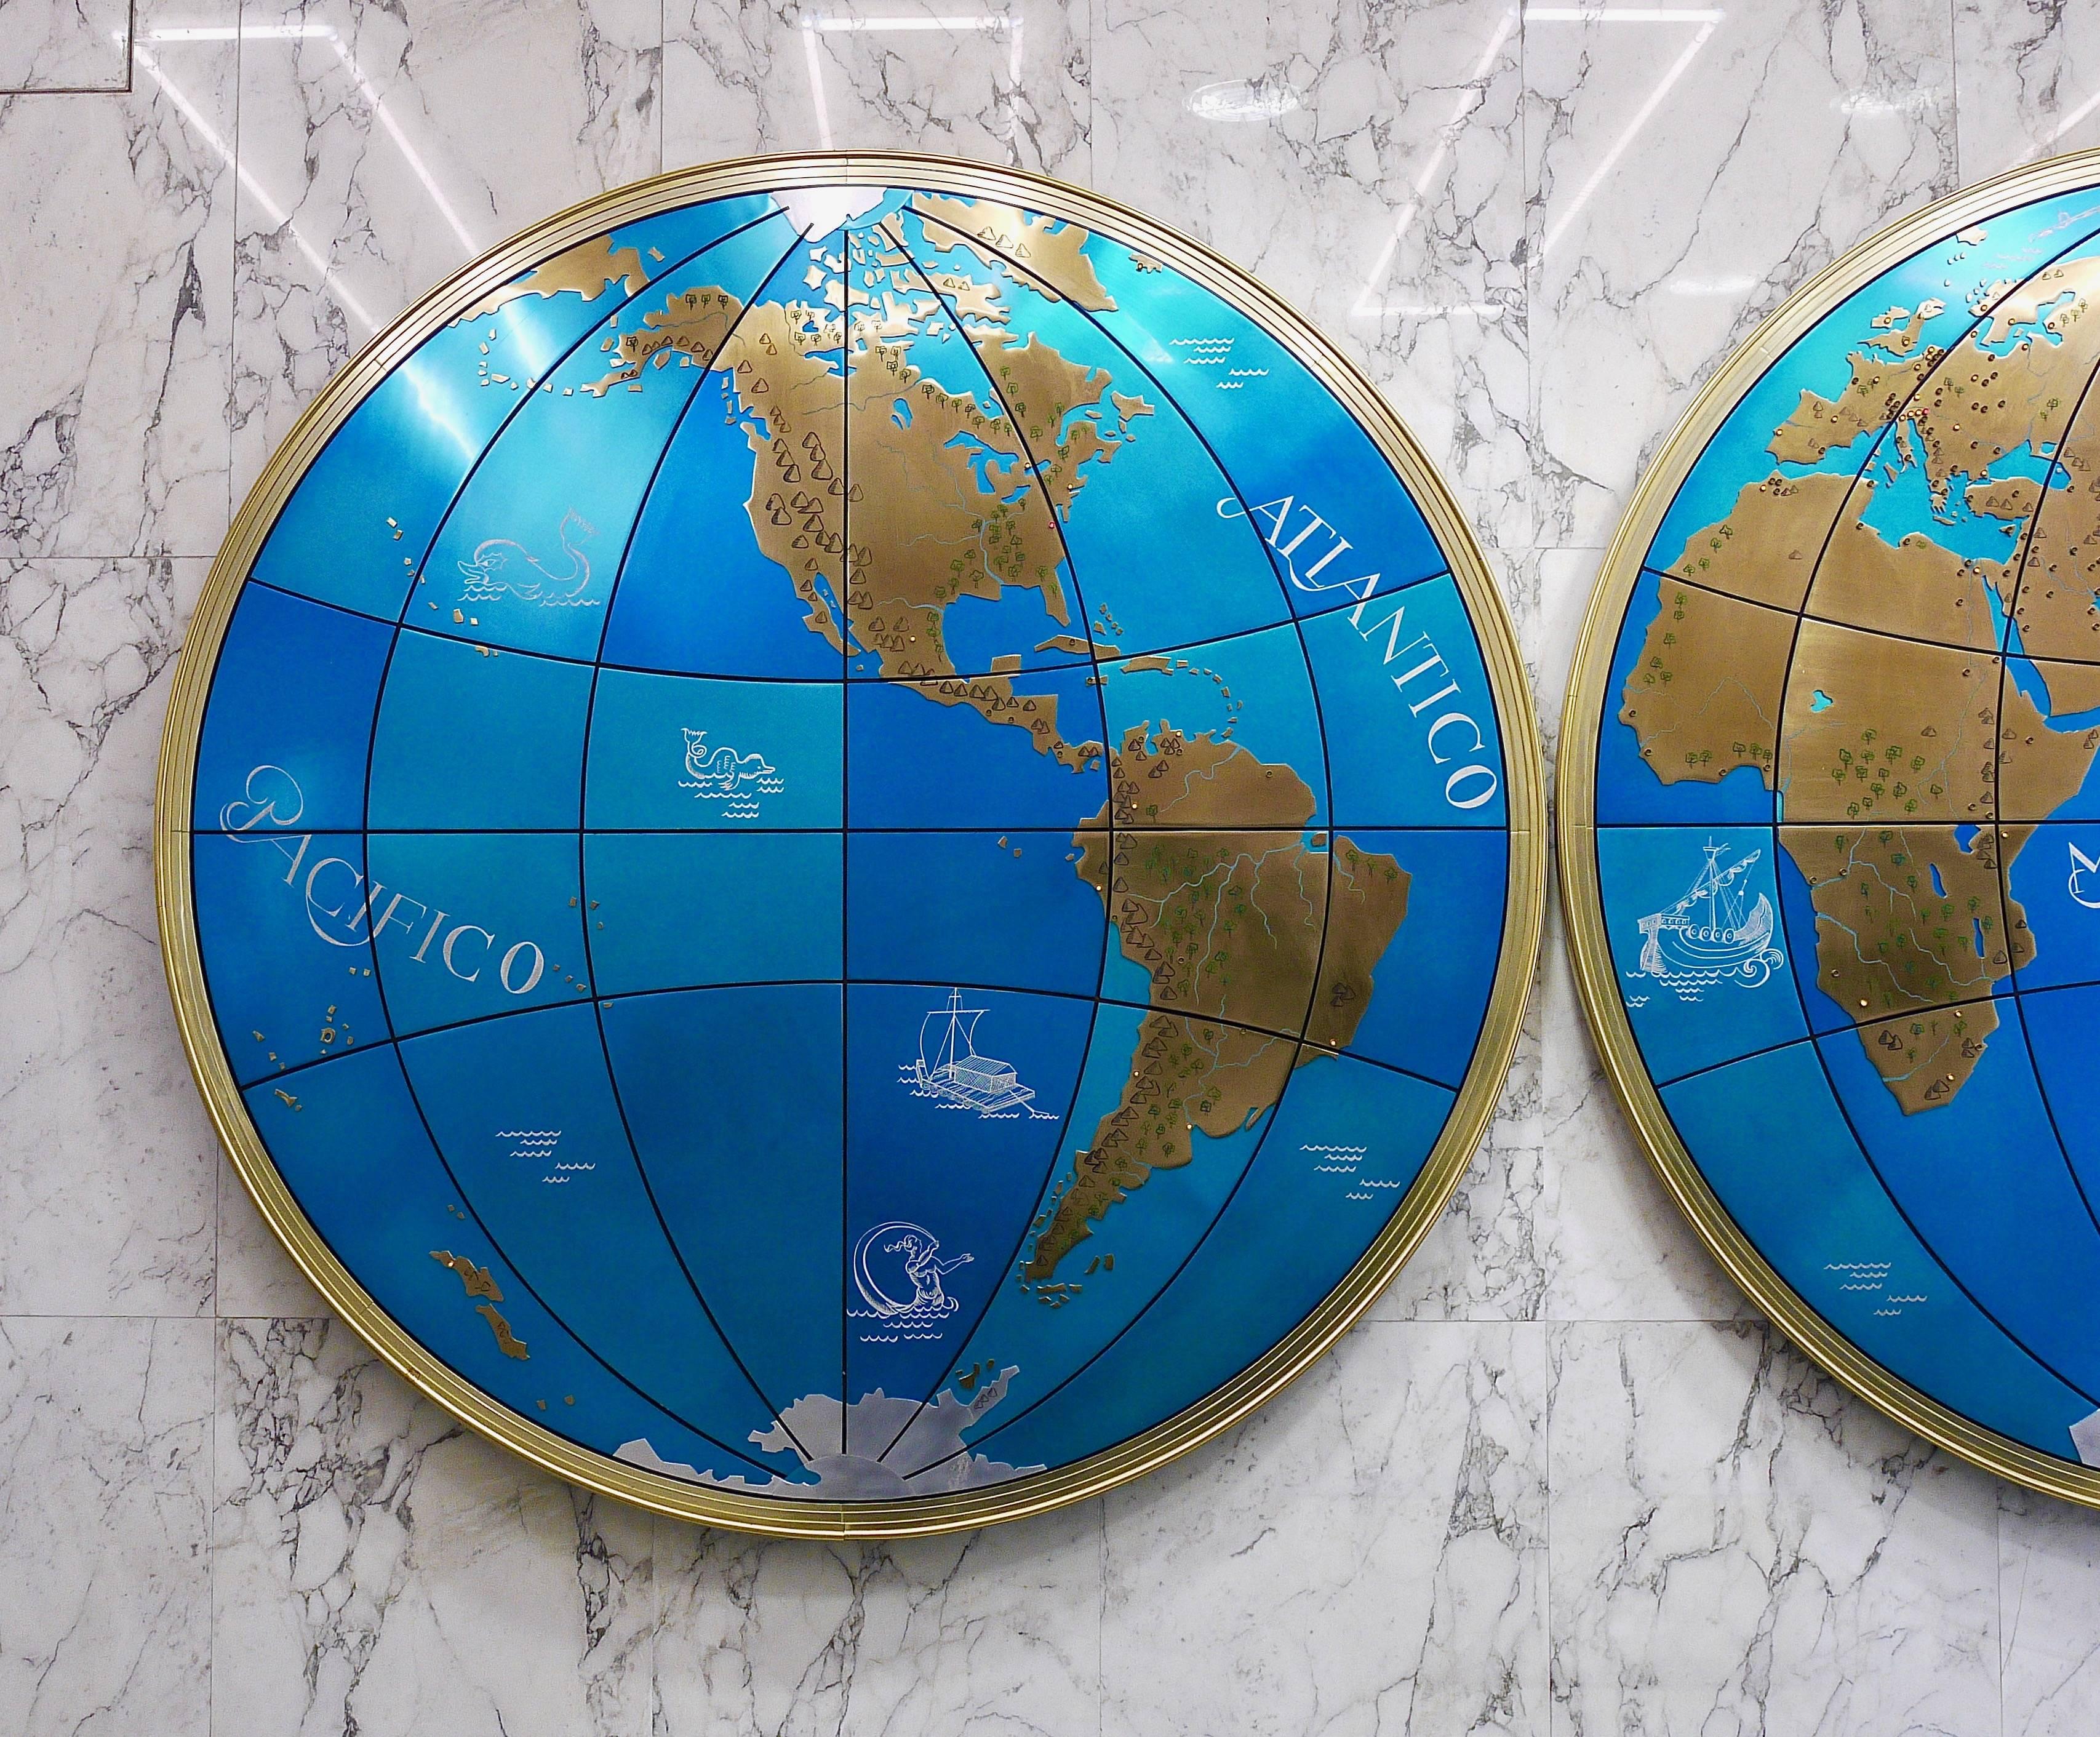 Nos enorgullece ofrecer este extraordinario par de globos terráqueos / mapamundis modernistas de gran tamaño, montados en la pared, con un increíble diámetro de 95 pulgadas cada uno. Esculturas únicas en su género que representan los continentes de